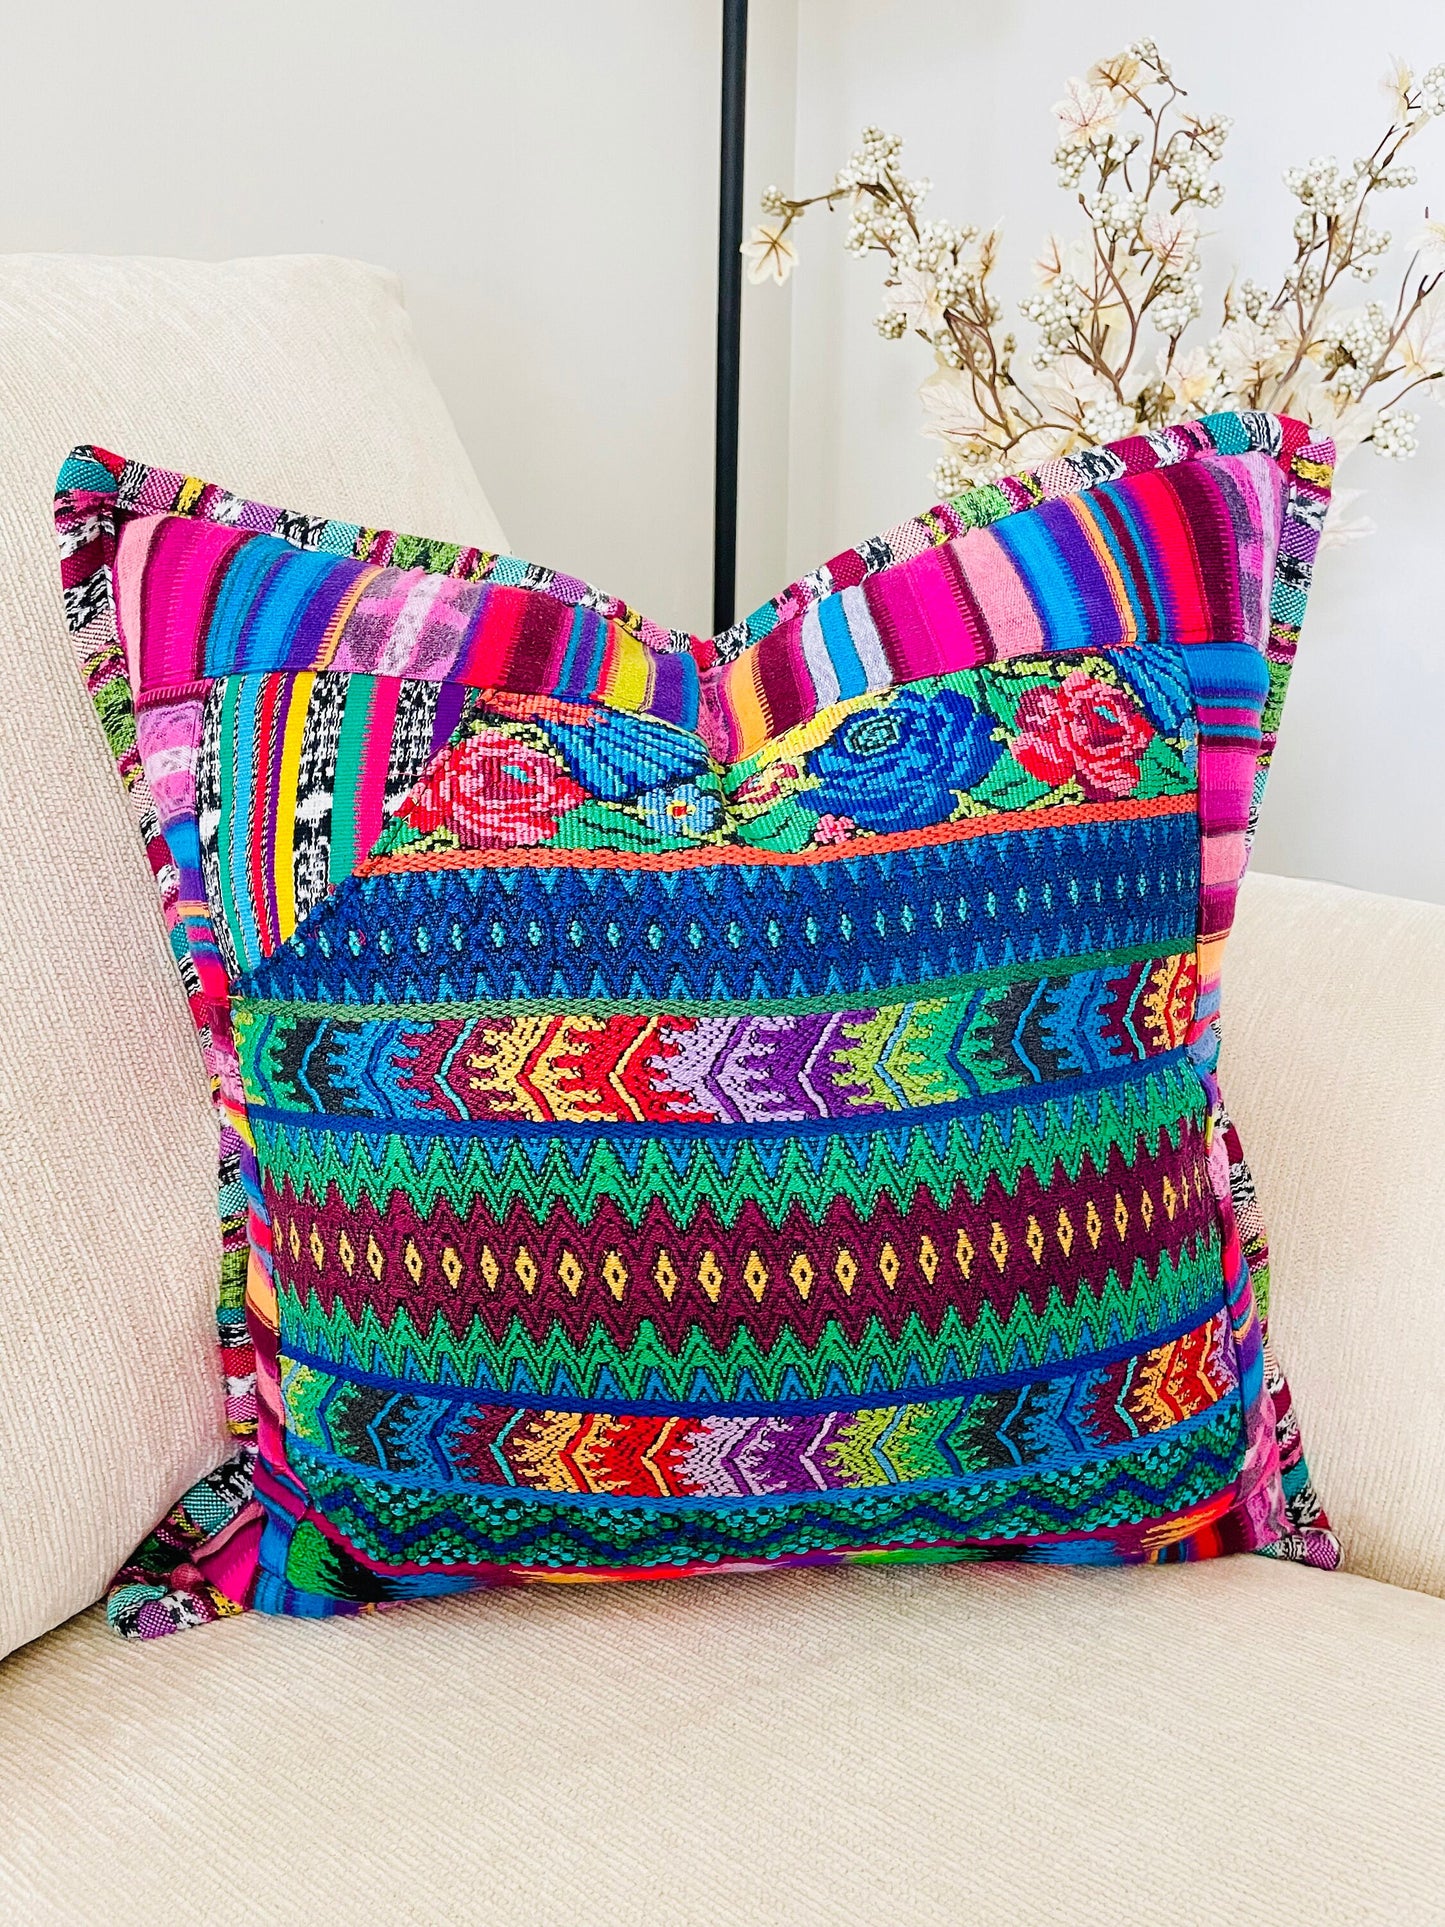 Guatemalan Huipil Decorative Throw pillow covers from San Antonio Aguas Calientes